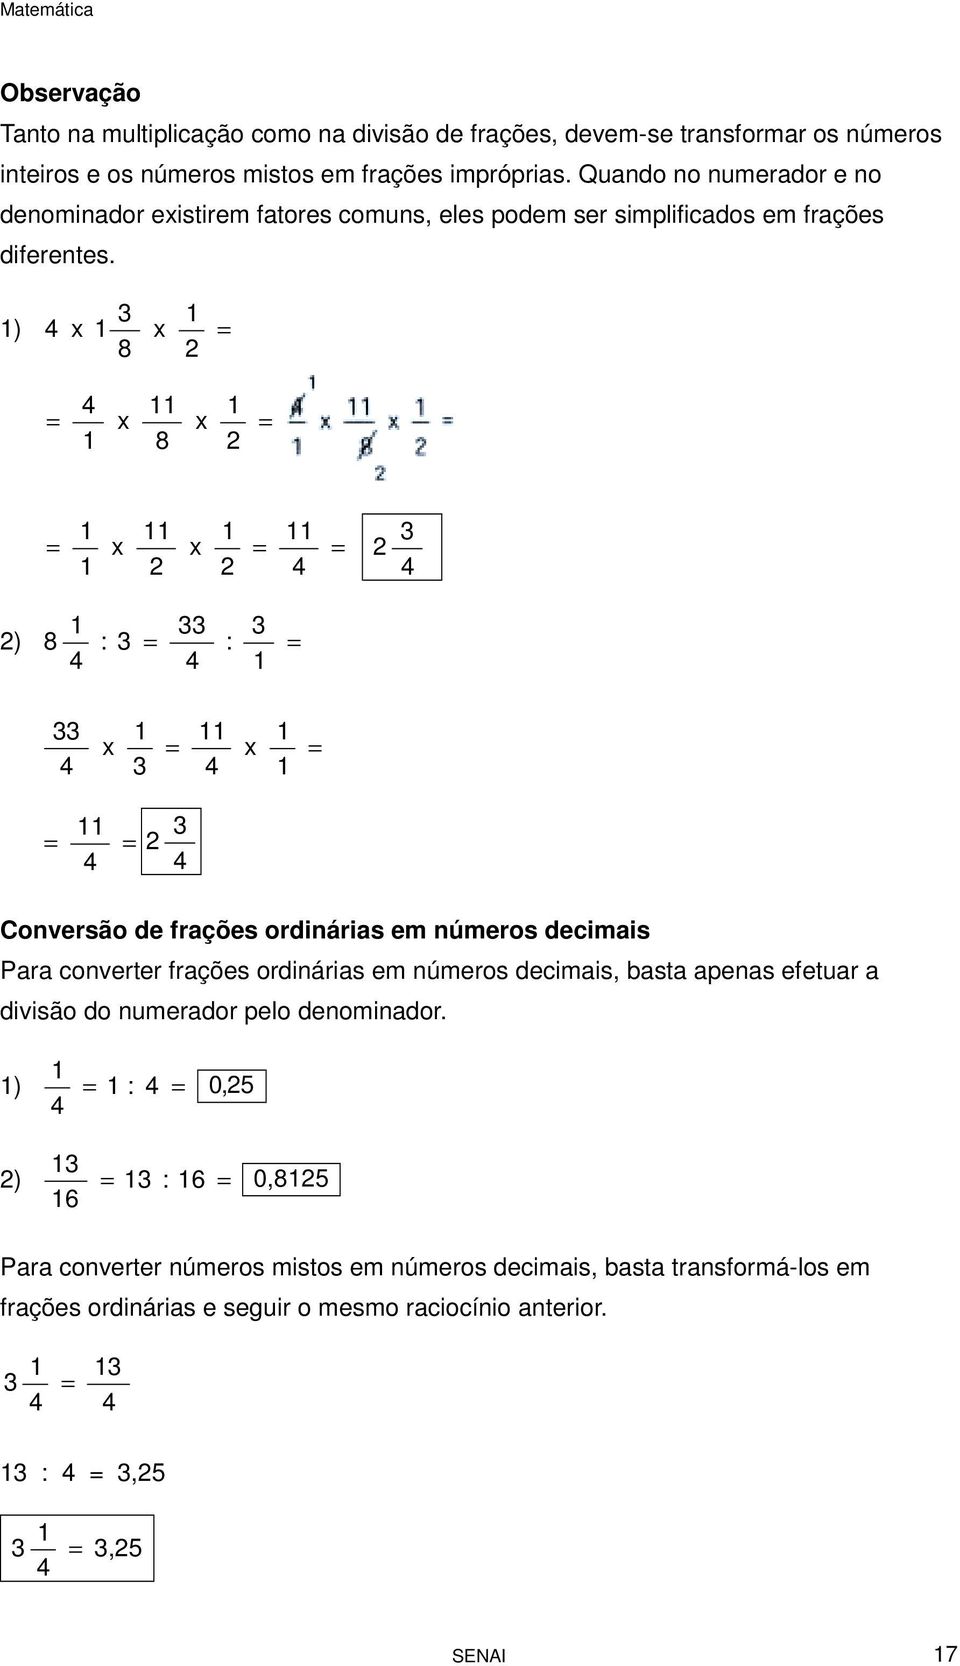 3 1 1) 4 x 1 x = 8 = 4 1 x 11 8 x 1 = = 1 1 x 11 x 1 = 11 4 = 3 4 1 33 3 ) 8 : 3 = : = 4 4 1 33 4 x 1 3 = 11 4 x 1 1 = = 11 4 = 3 4 Conversão de frações ordinárias em números decimais Para